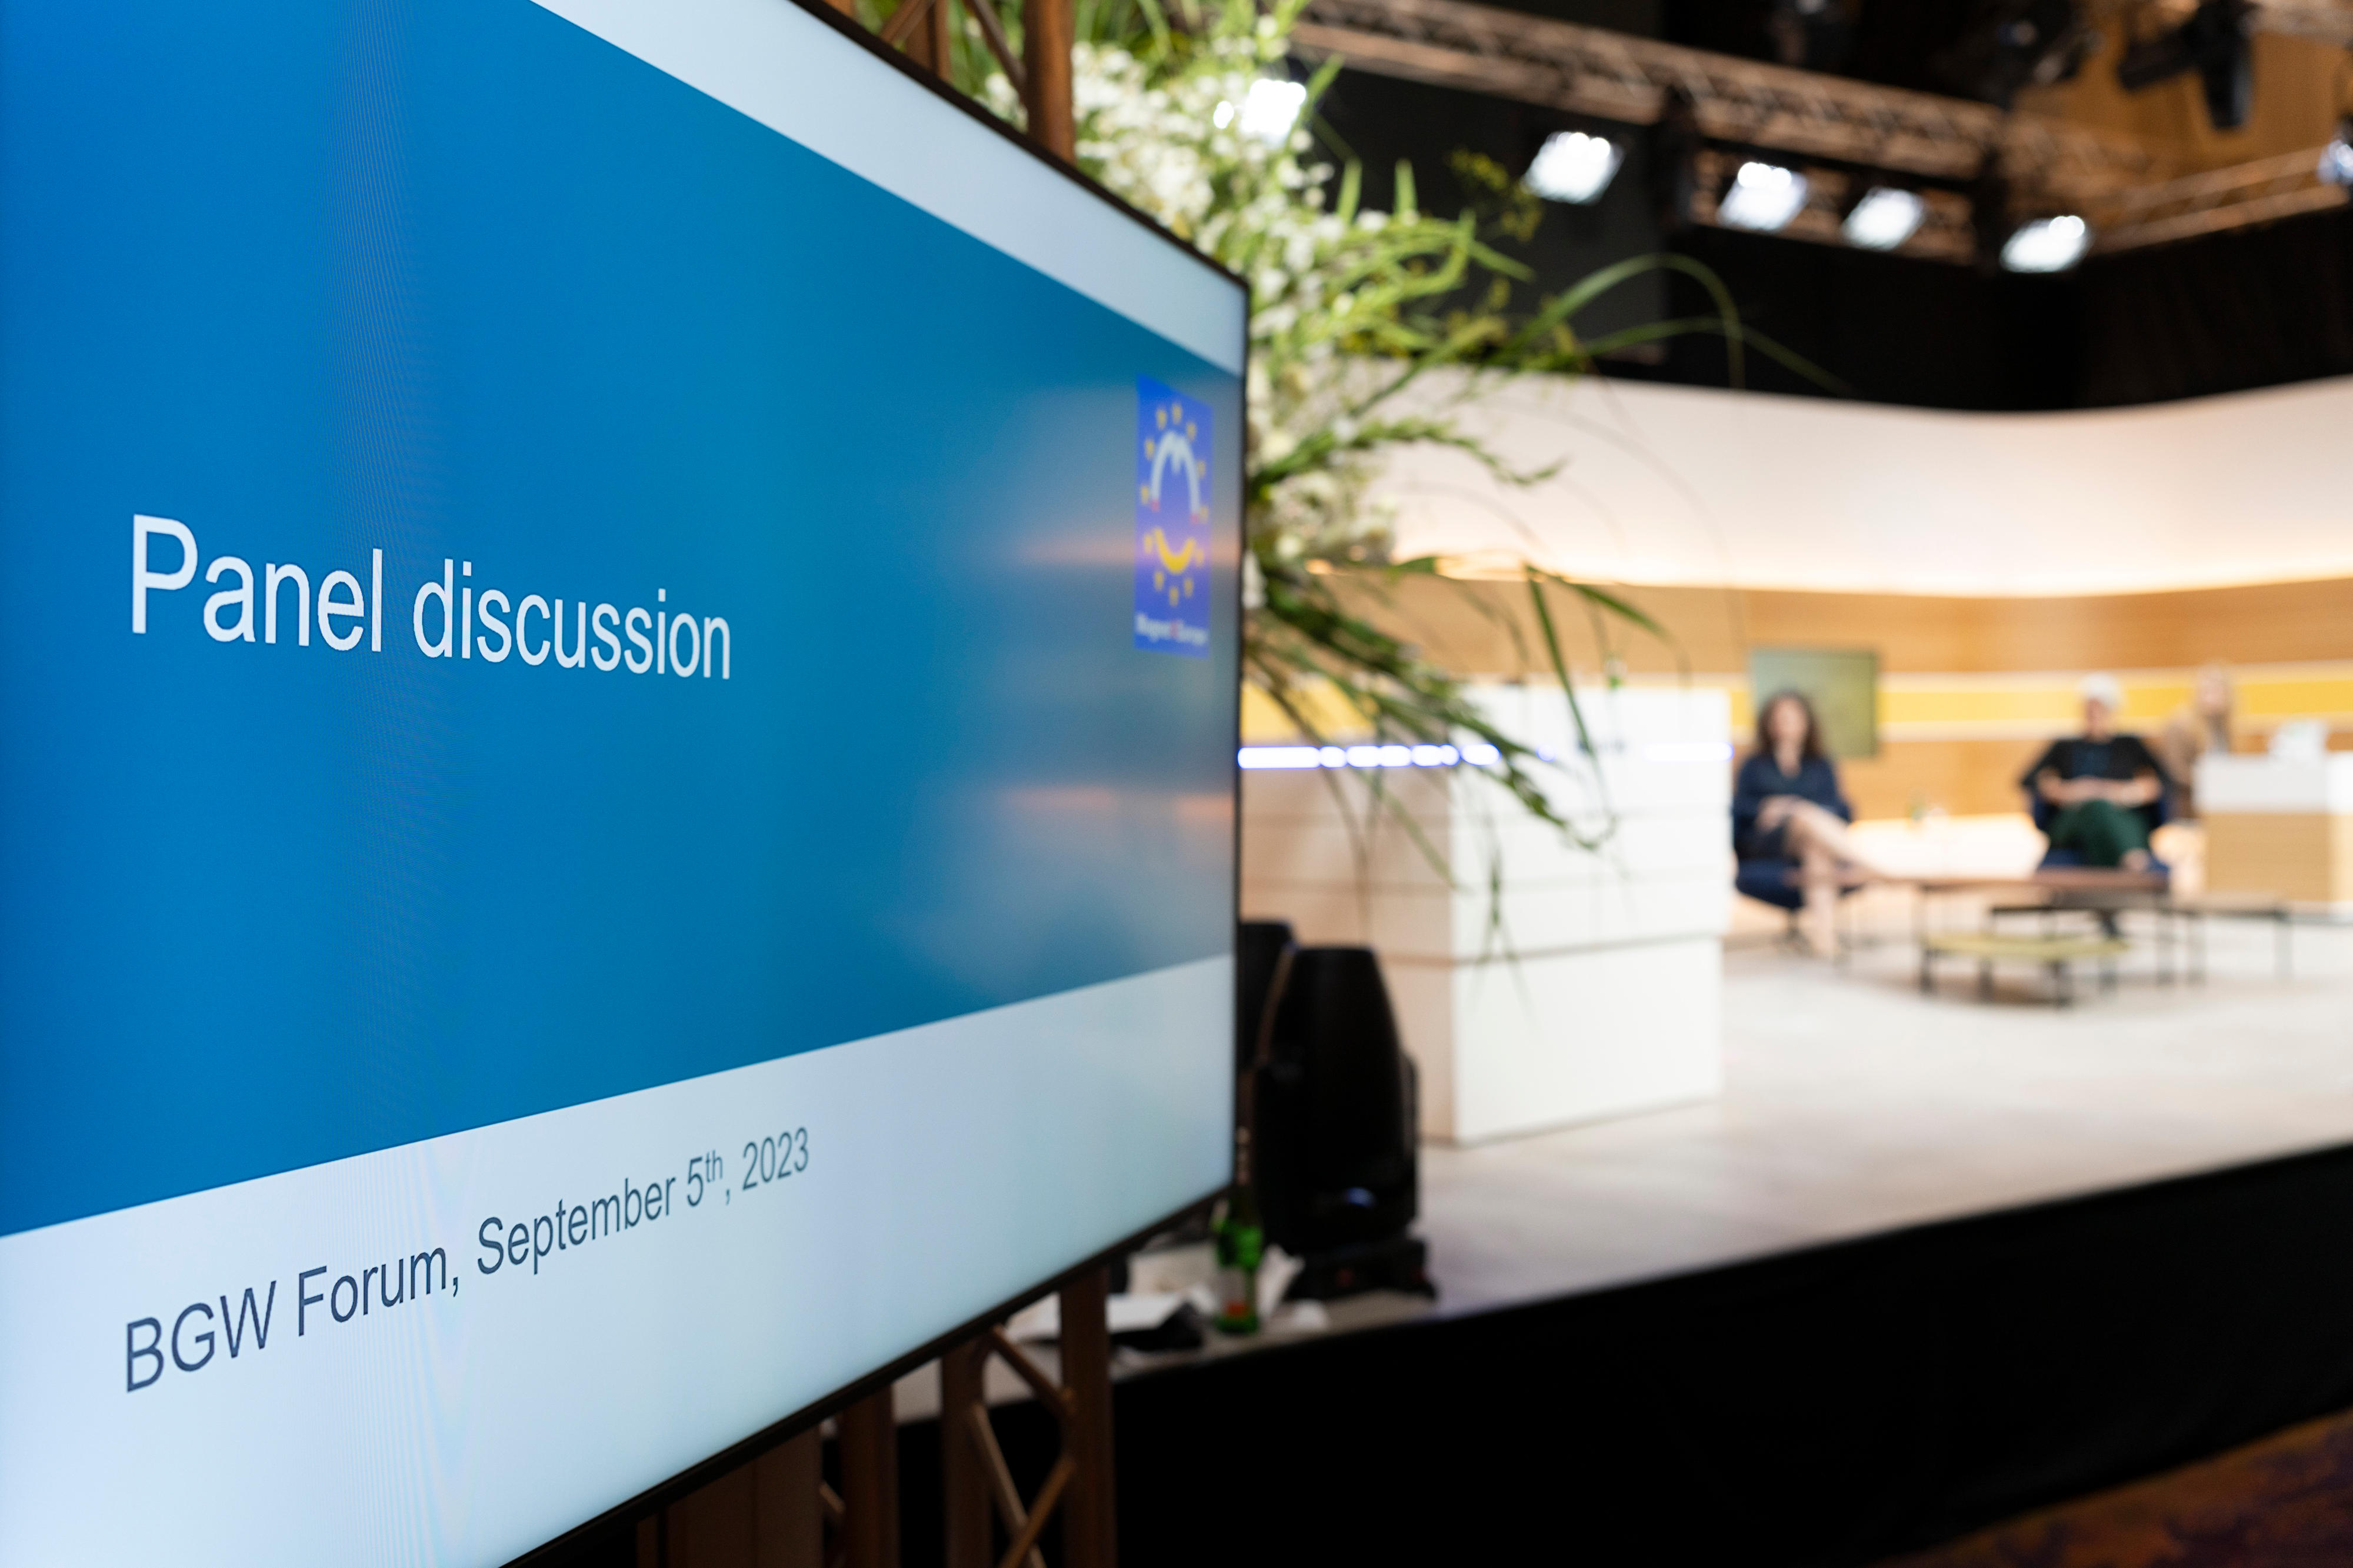 Auf einem Bildschirm im Vordergrund steht "Panel discussion", im unscharfen Hintergrund sitzen 2 Menschen auf einer beleuchteten Bühne